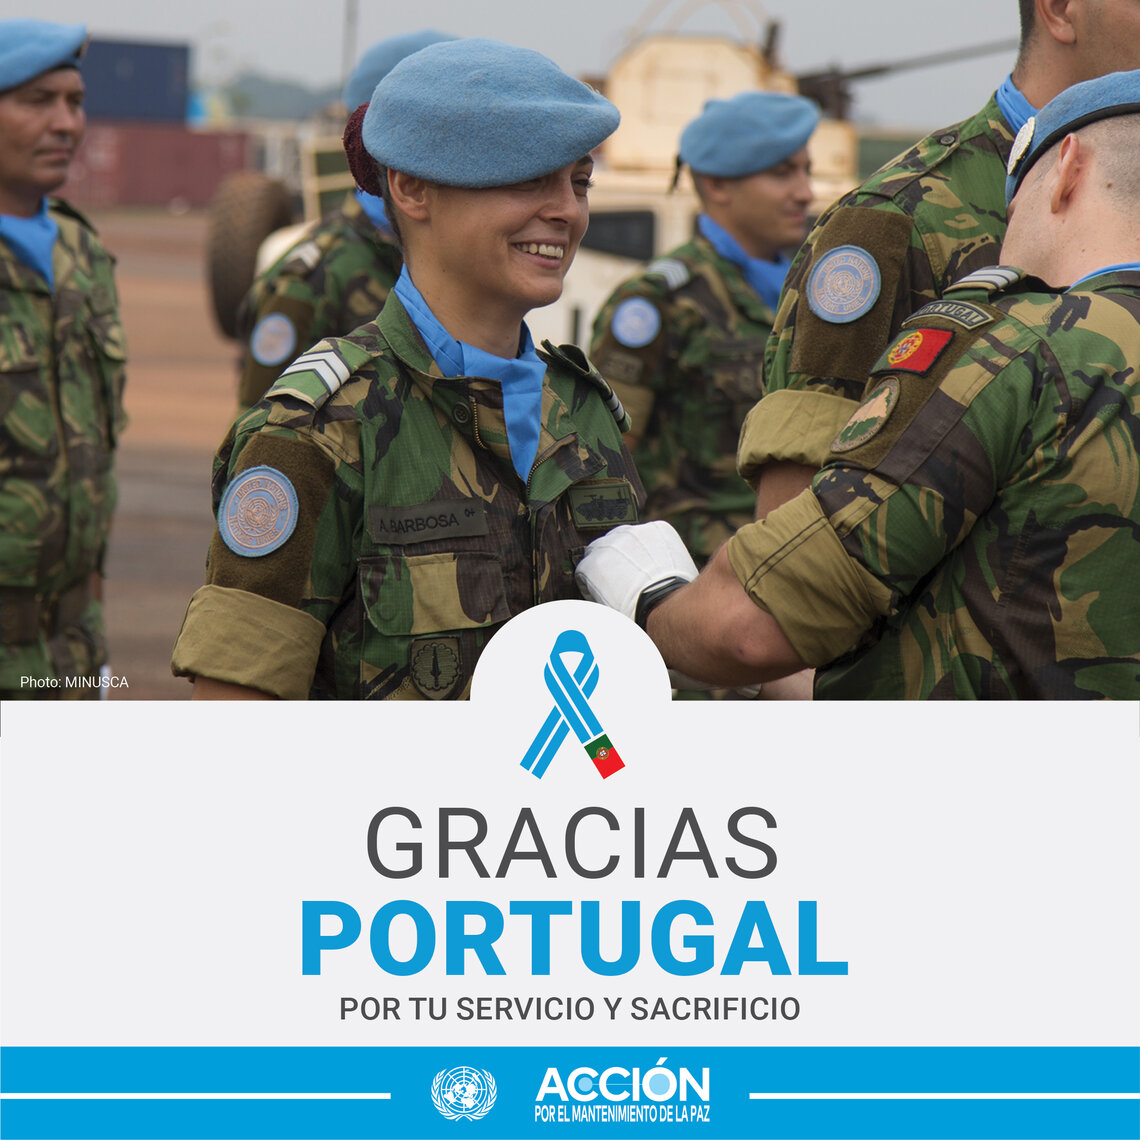 Tarjeta de una casco azul de Portugal con otros compañeros y el texto: Gracias, Portugal, por tu servicio y sacrificio.